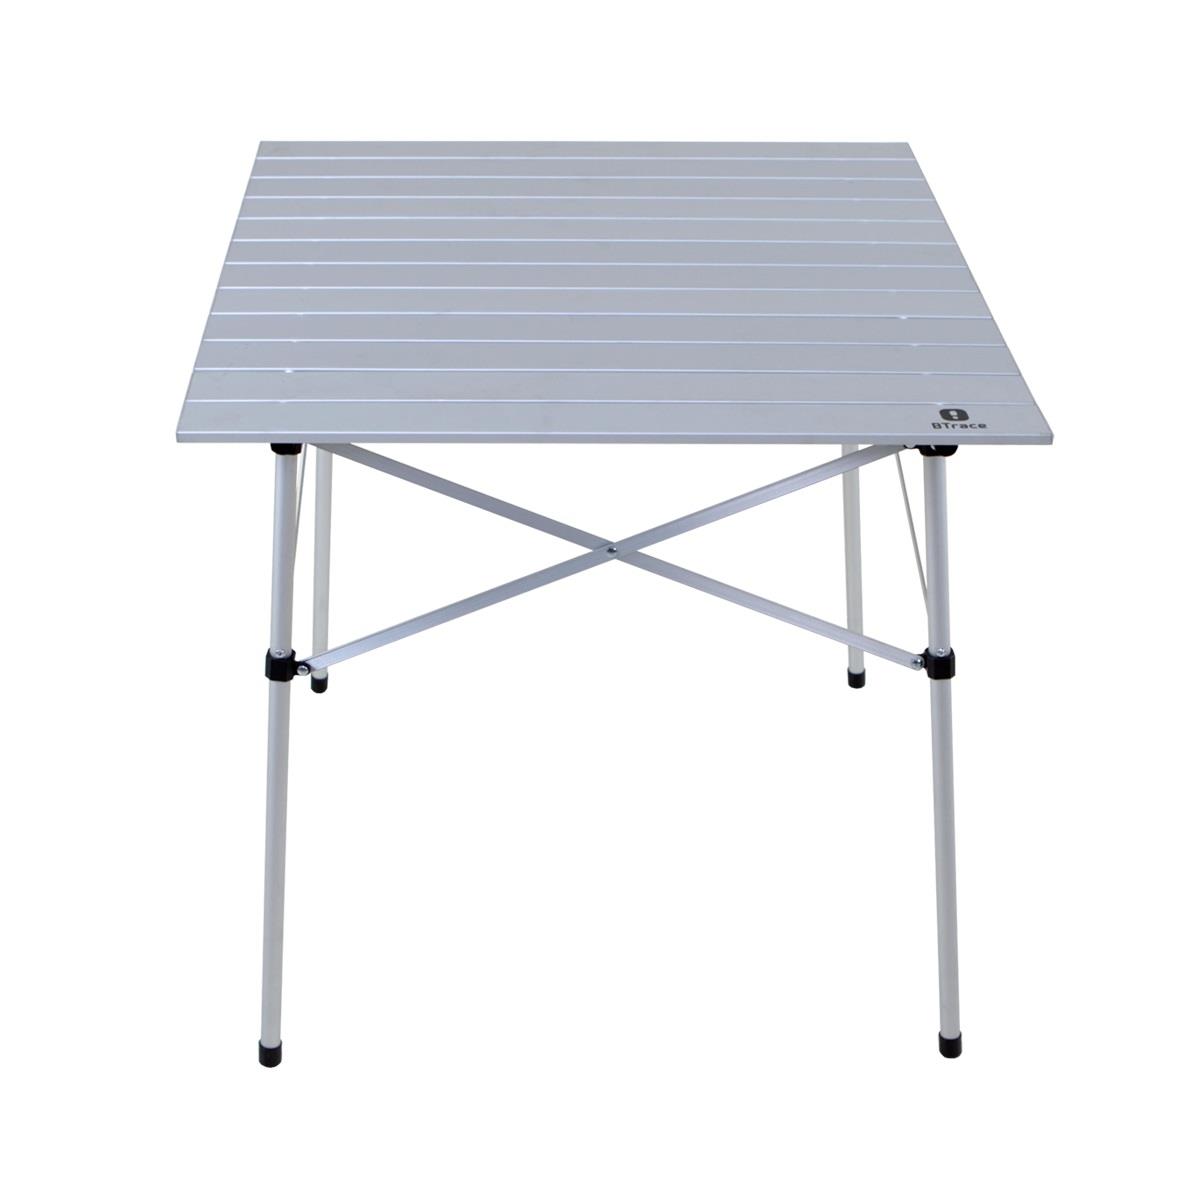 Стол складной Qick table 70 (F0500) BTrace стол координатный алюминиевый с прижимами 330x95 мм технореал ма320352011